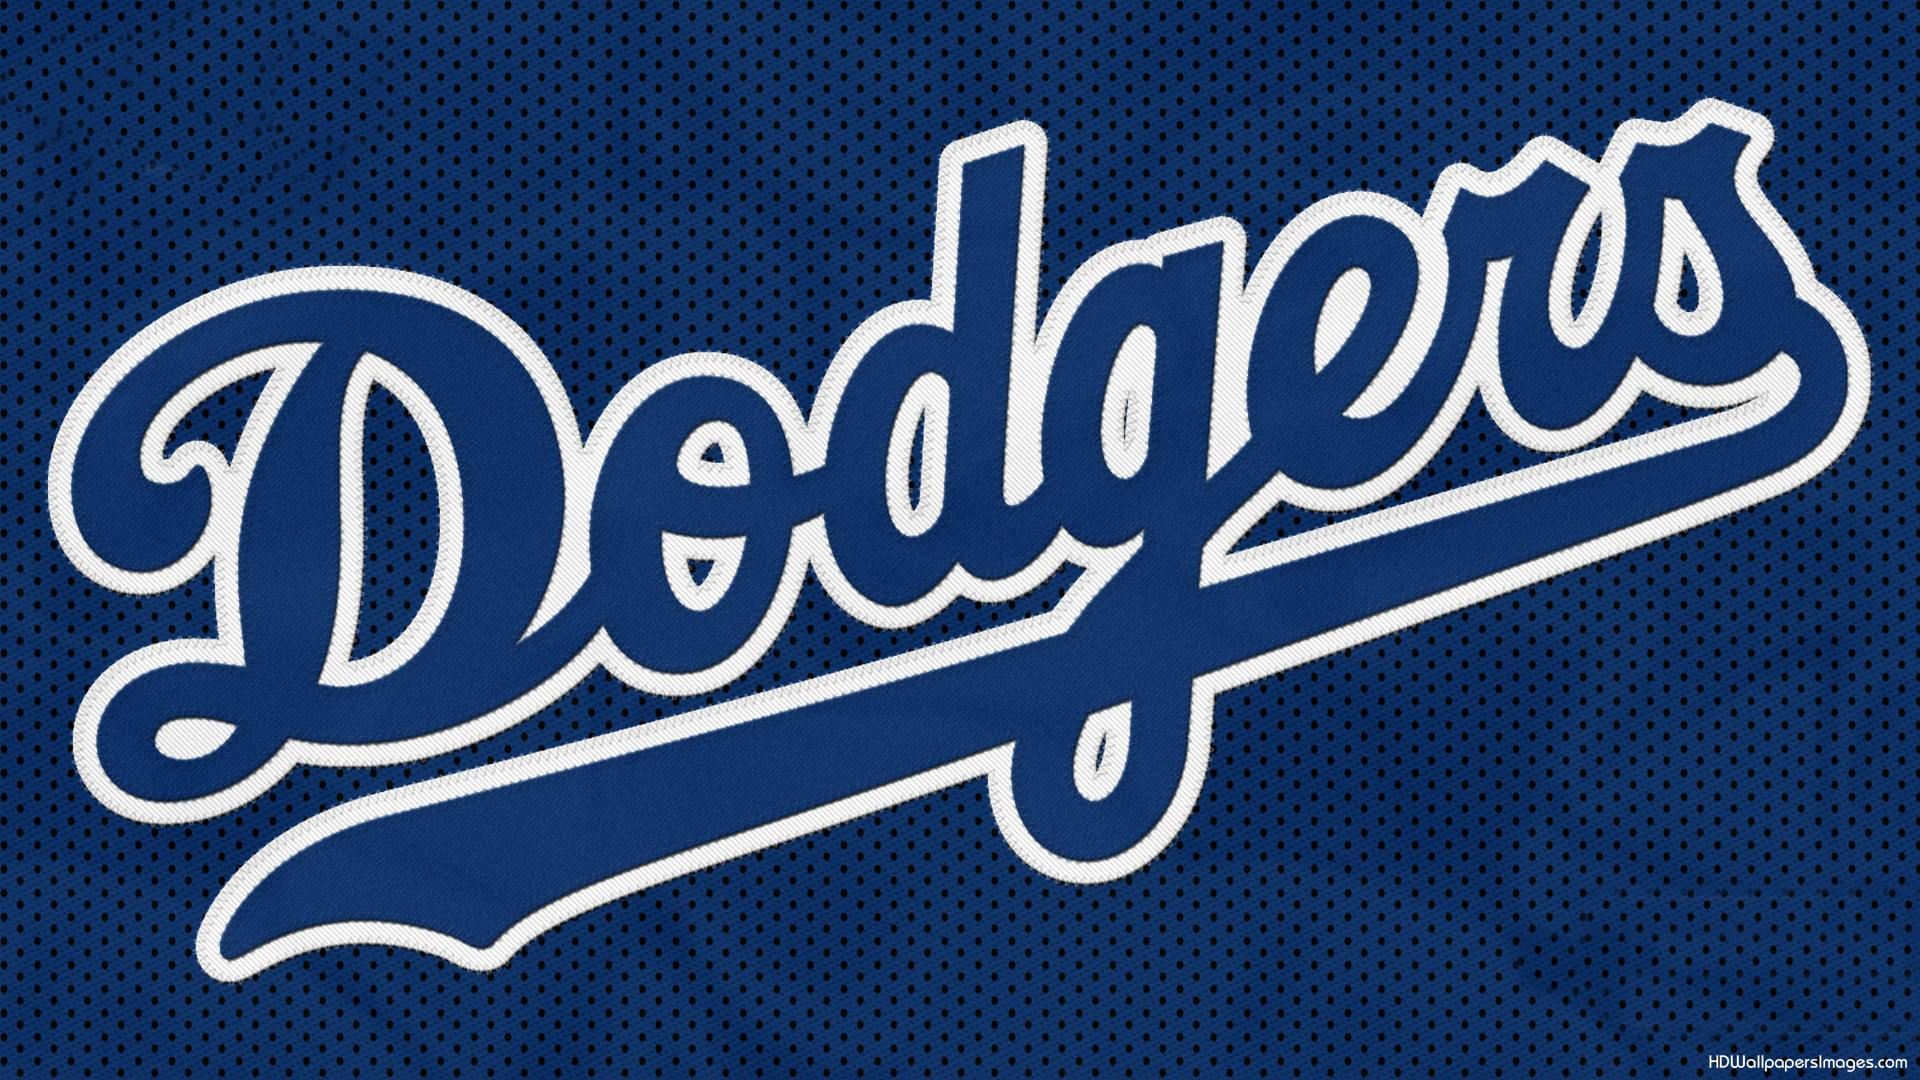 Dodgers de Los Ángeles hará recorte salarial a personal